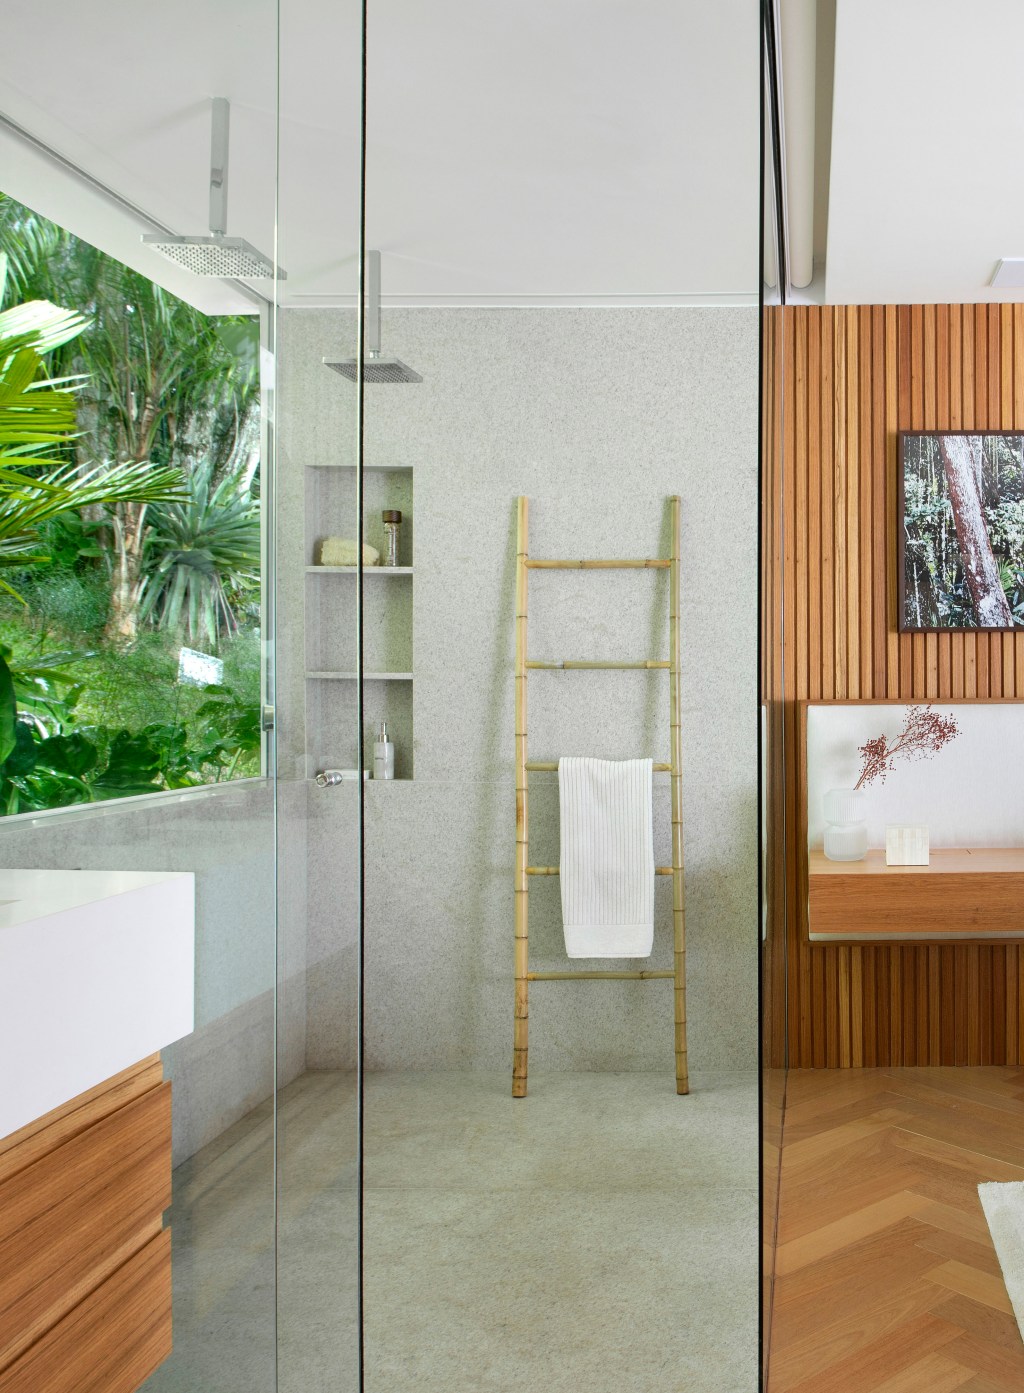 Suíte de 80 m2 clima hotel cinco estrelas Diego Raposo Manuela Simas decoração jardim banheiro box madeira